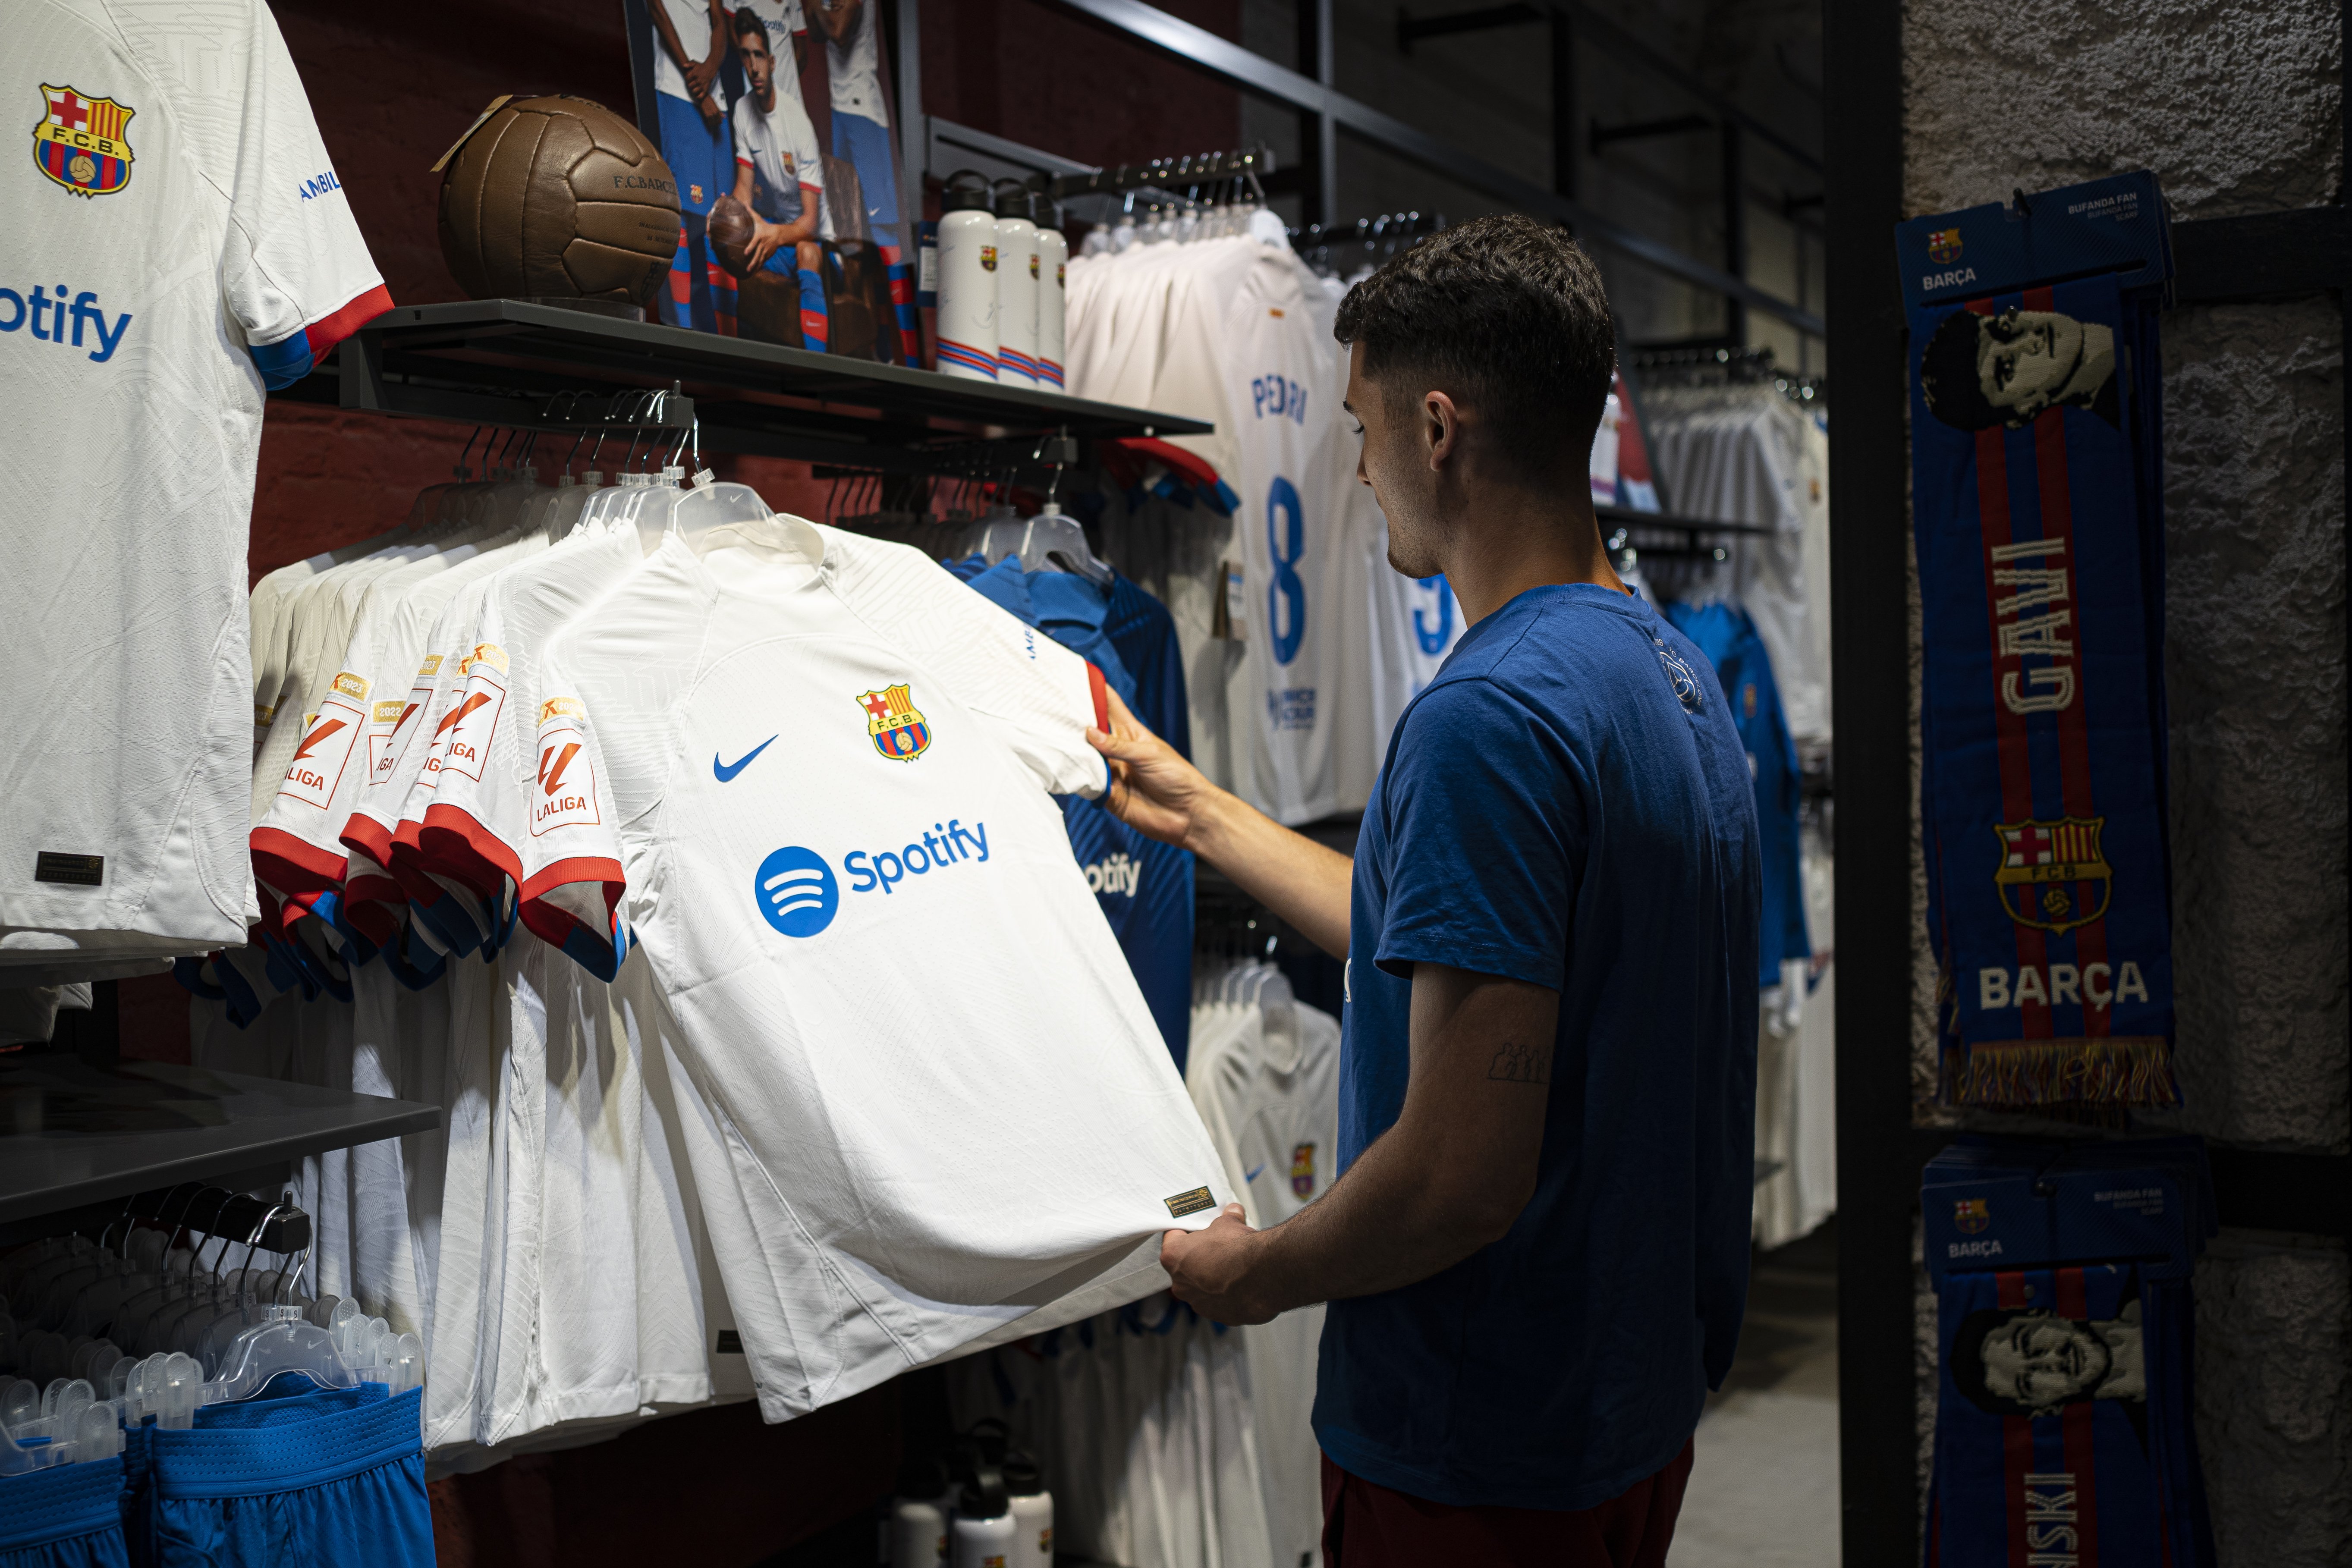 Ni Nike, ni Adidas, ni Puma, nueva vía ganadora para la camiseta del Barça